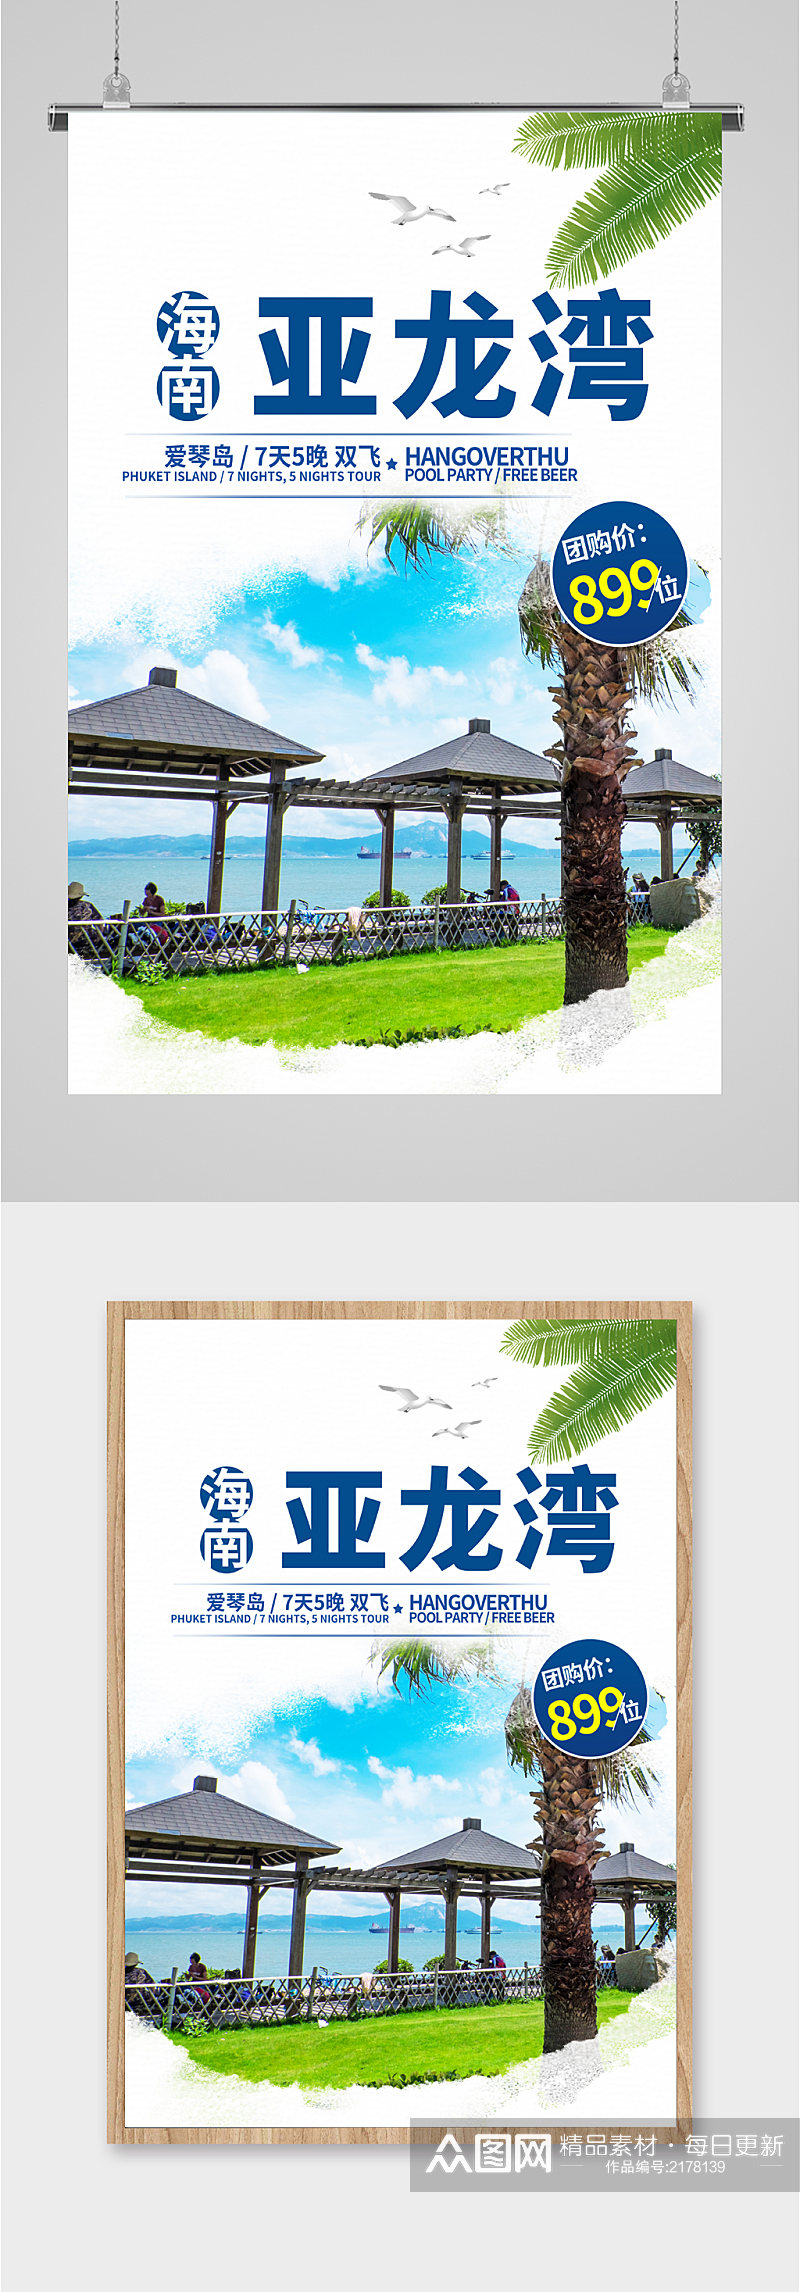 亚龙湾风景旅游海报素材